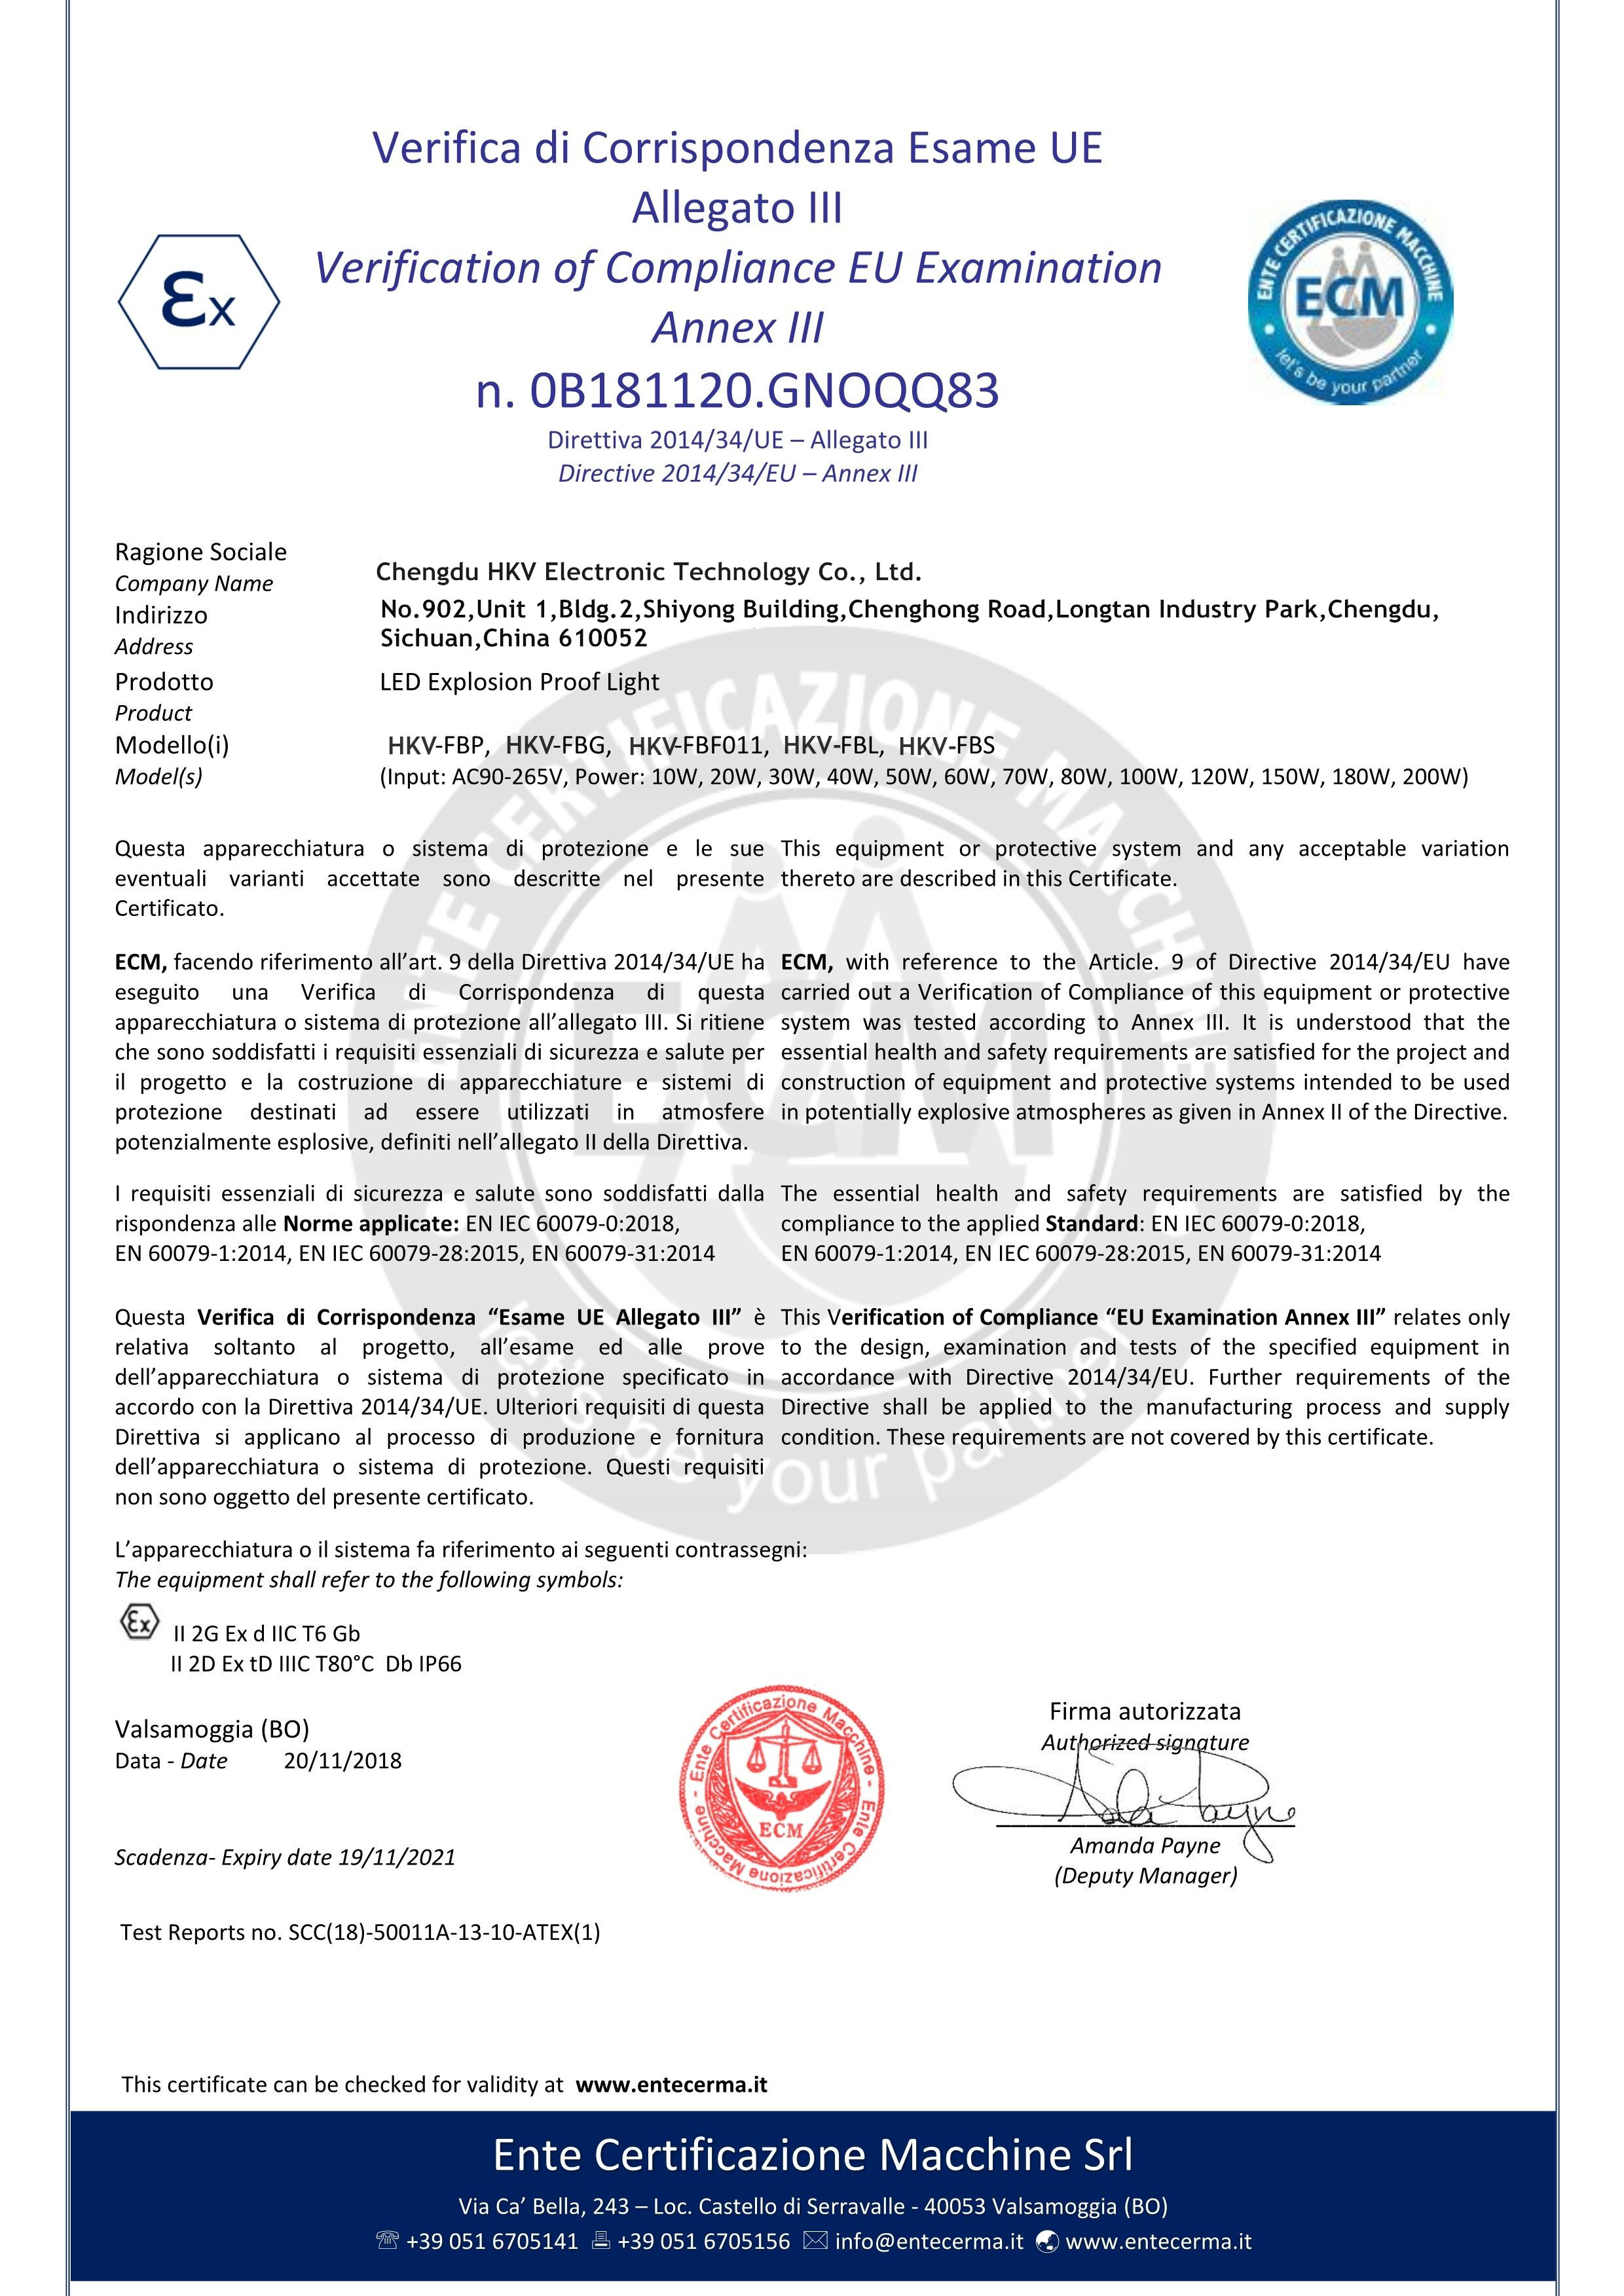 China Chengdu HKV Electronic Technology Co., Ltd. Certification